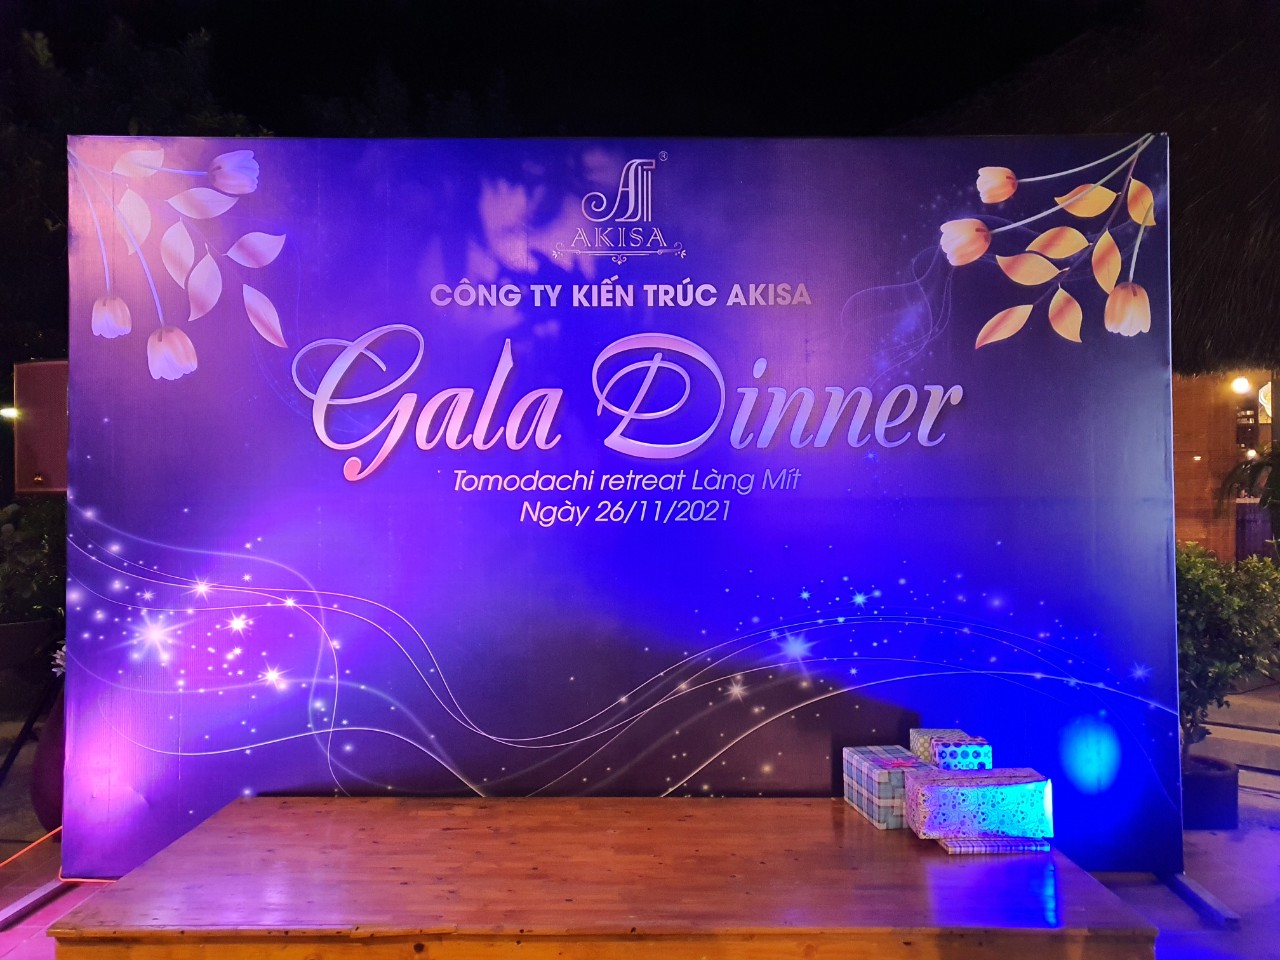 Kiến trúc AKISA tổ chức Gala Dinner & sinh nhật tháng 11